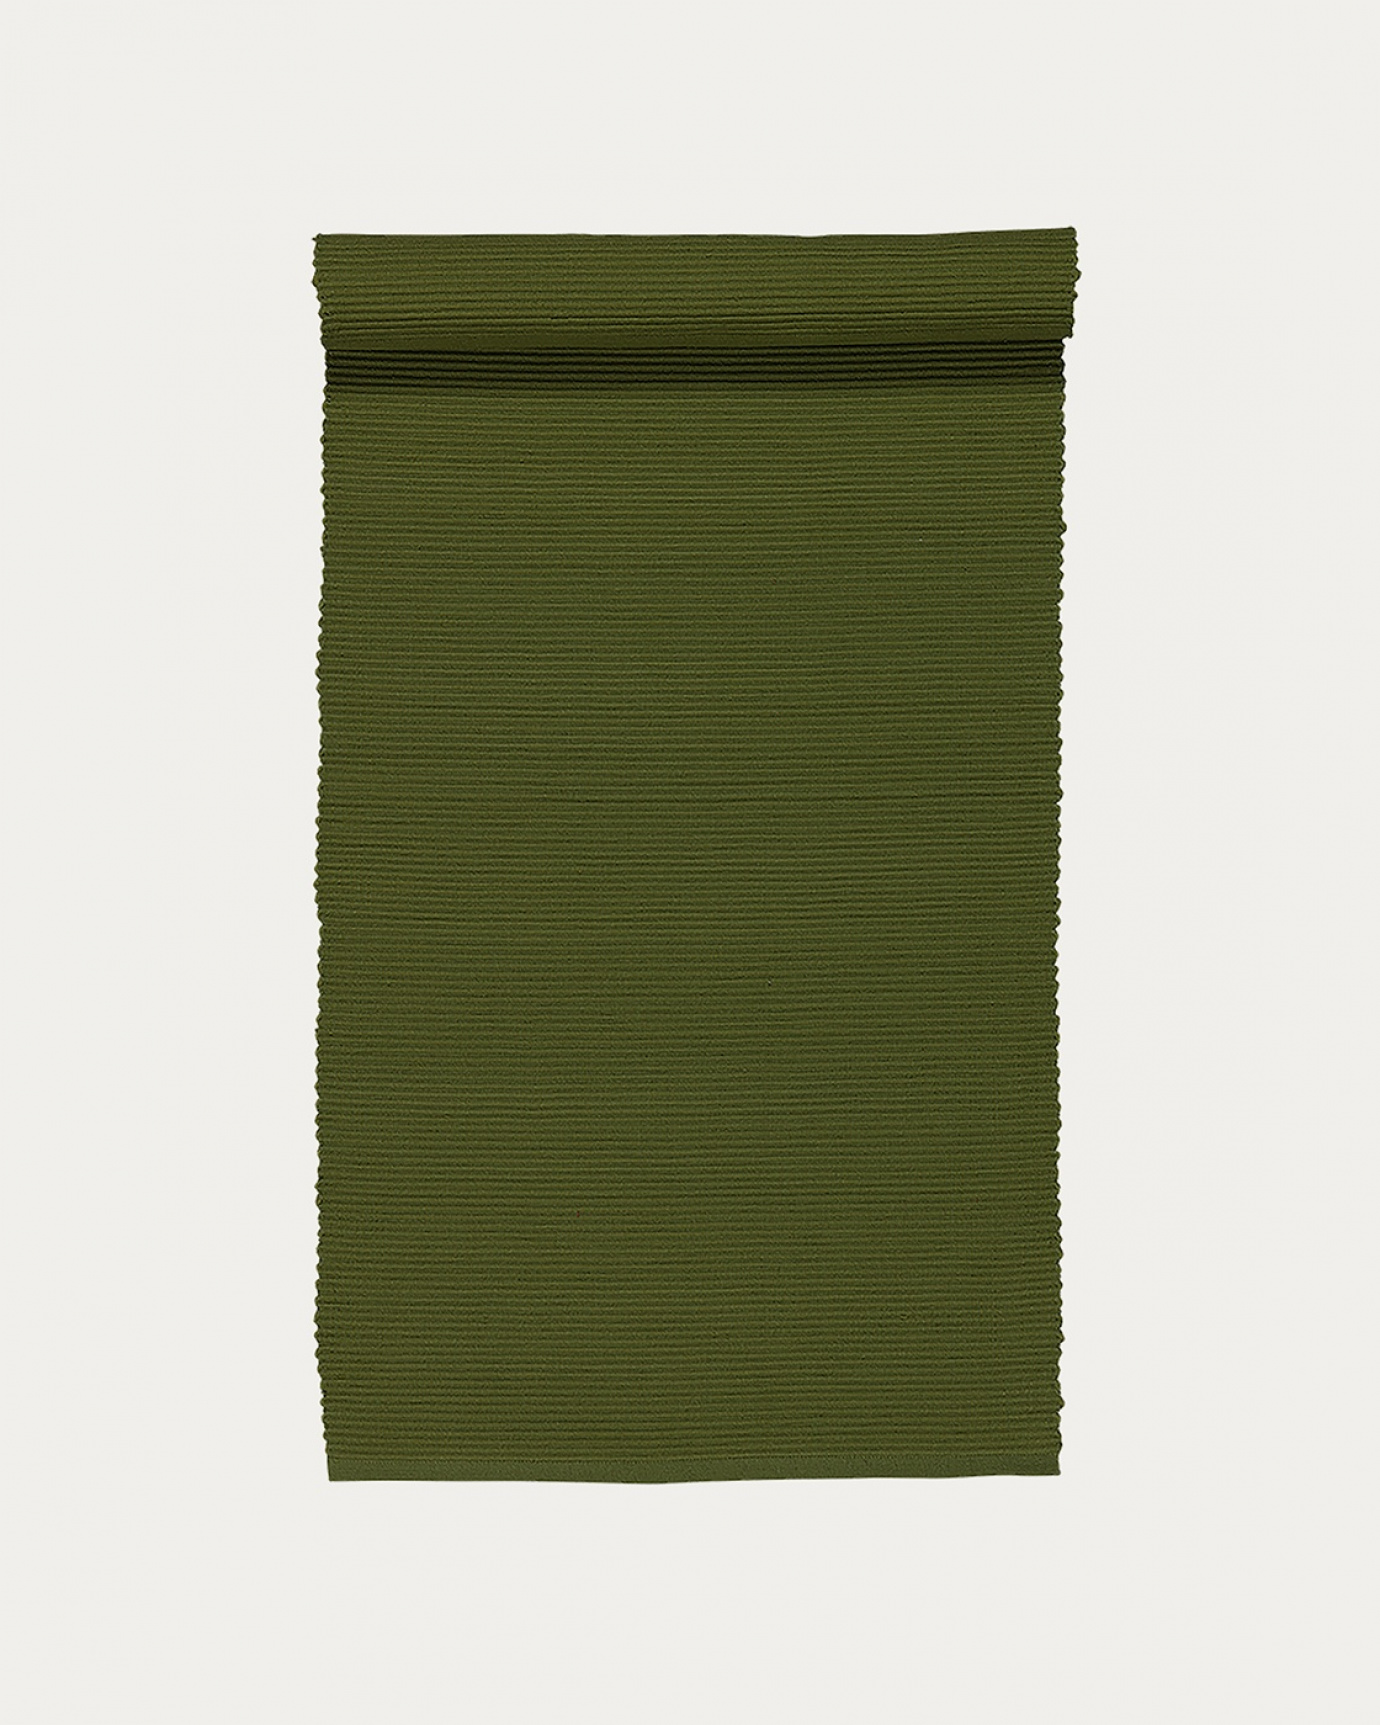 Produktbild dunkles olivgrün UNI Tischläufer aus weicher Baumwolle in Rippenqualität von LINUM DESIGN. Größe 45x150 cm.